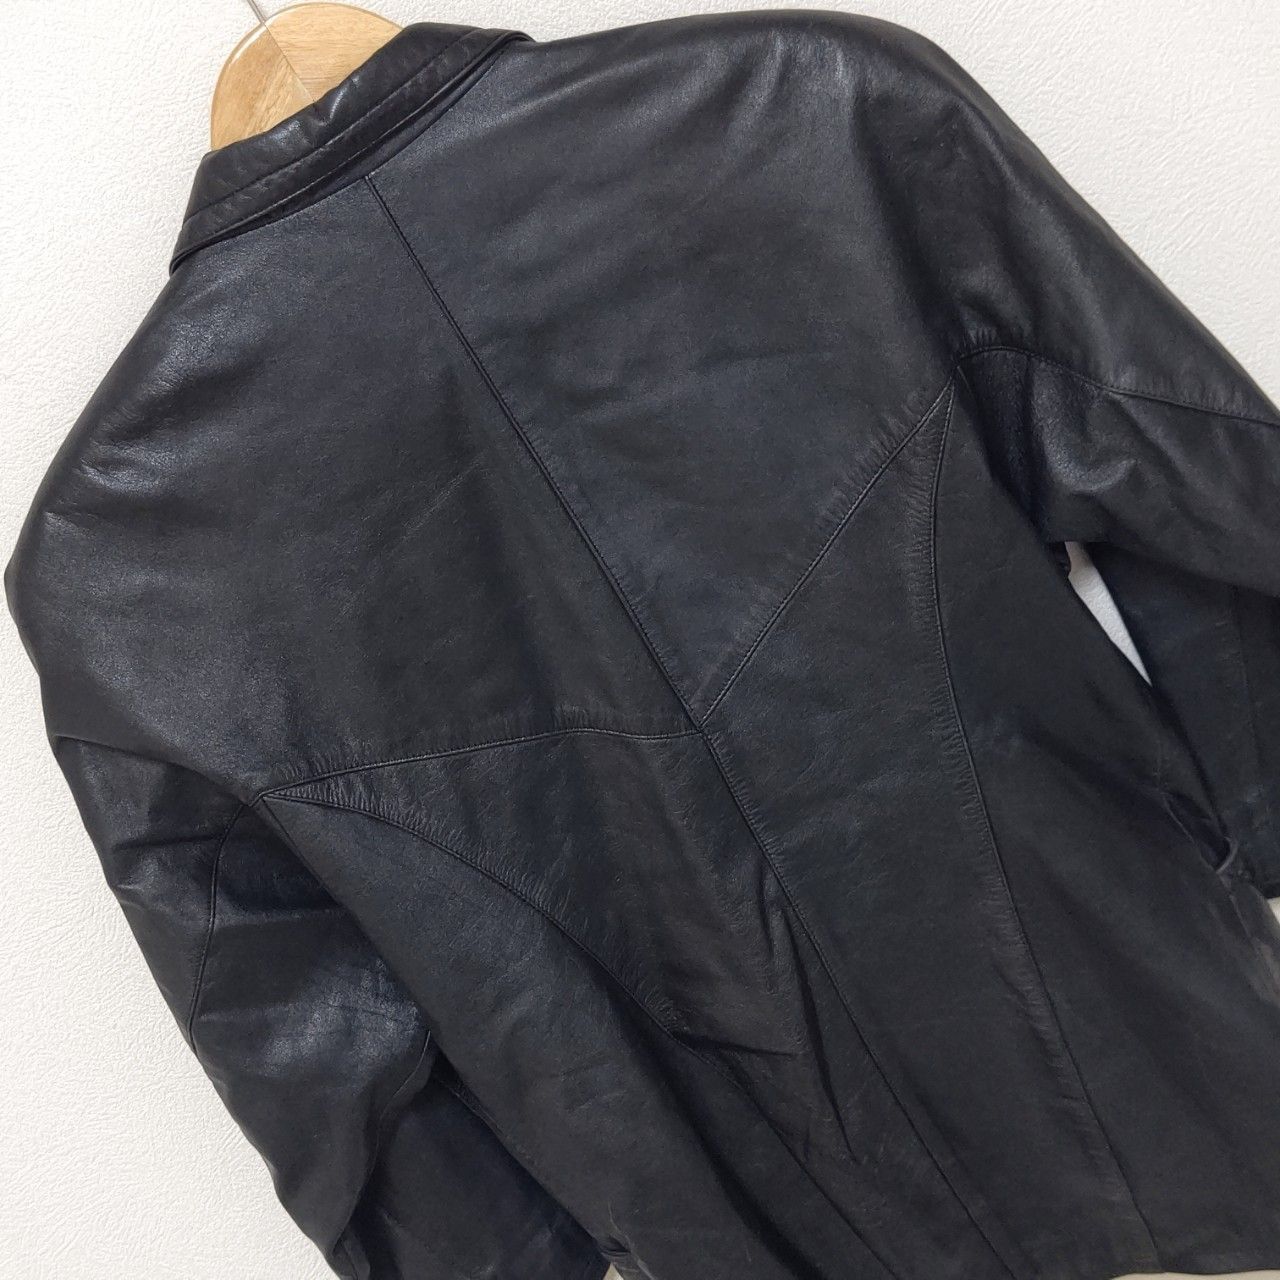 日本製【JHA-JHA】ジャジャ by FOOK leather jacket レザー ジャケット 